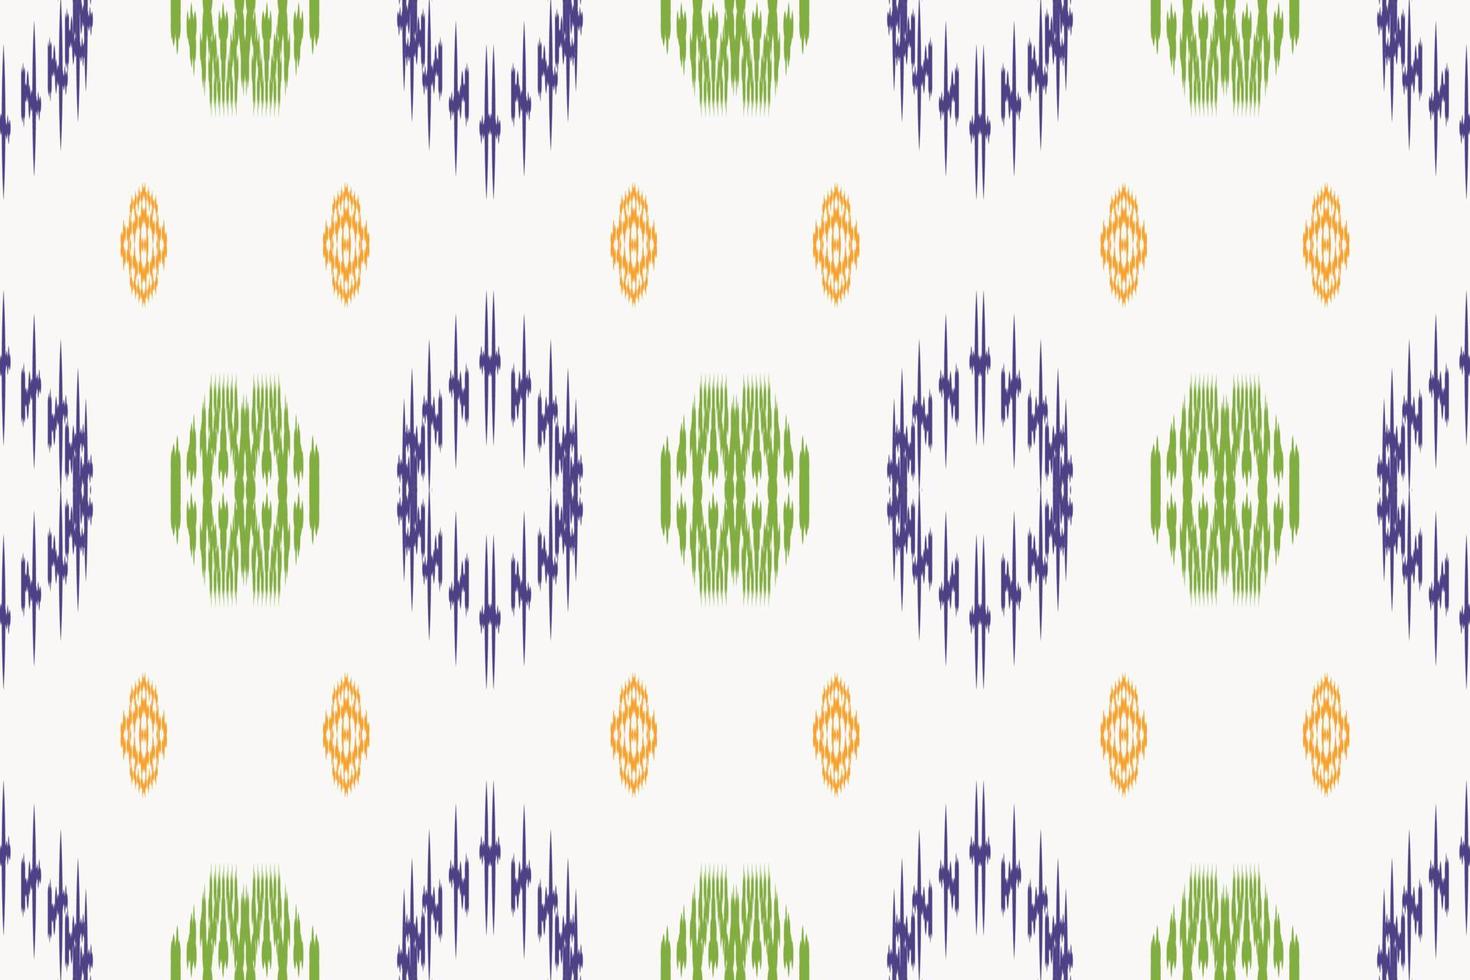 padrão sem emenda abstrato tribal floral ikat. étnico geométrico batik ikkat design têxtil de vetor digital para estampas tecido saree mughal pincel símbolo faixas textura kurti kurtis kurtas